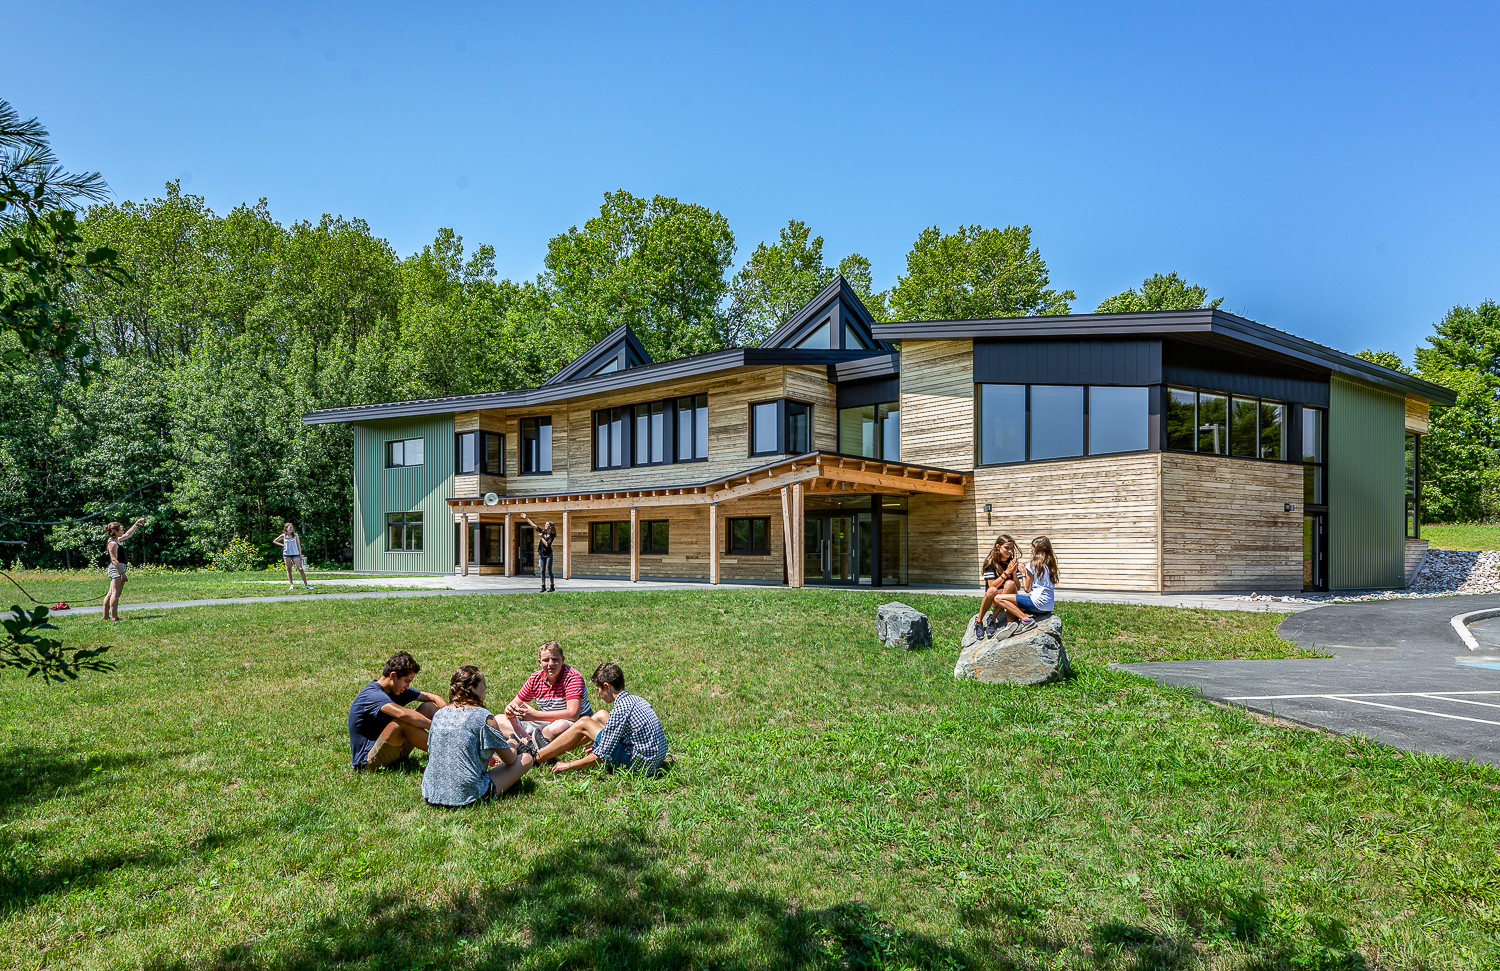 Tổ hợp chung cư cao cấp Le Grand Jardin – Nổi bật với không gian sống xanh mát